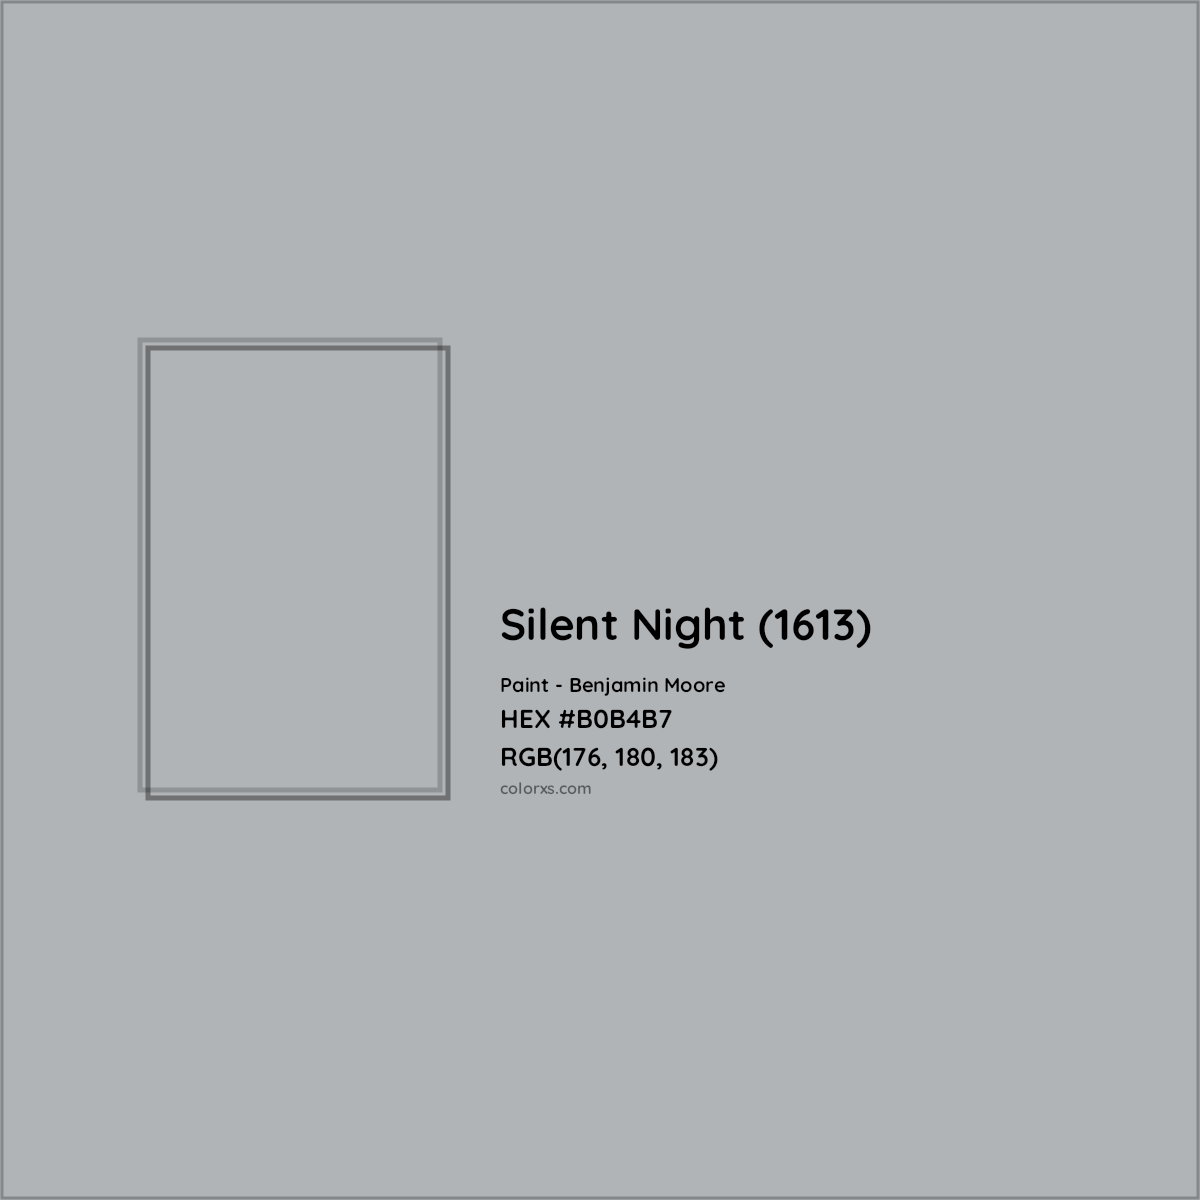 HEX #B0B4B7 Silent Night (1613) Paint Benjamin Moore - Color Code